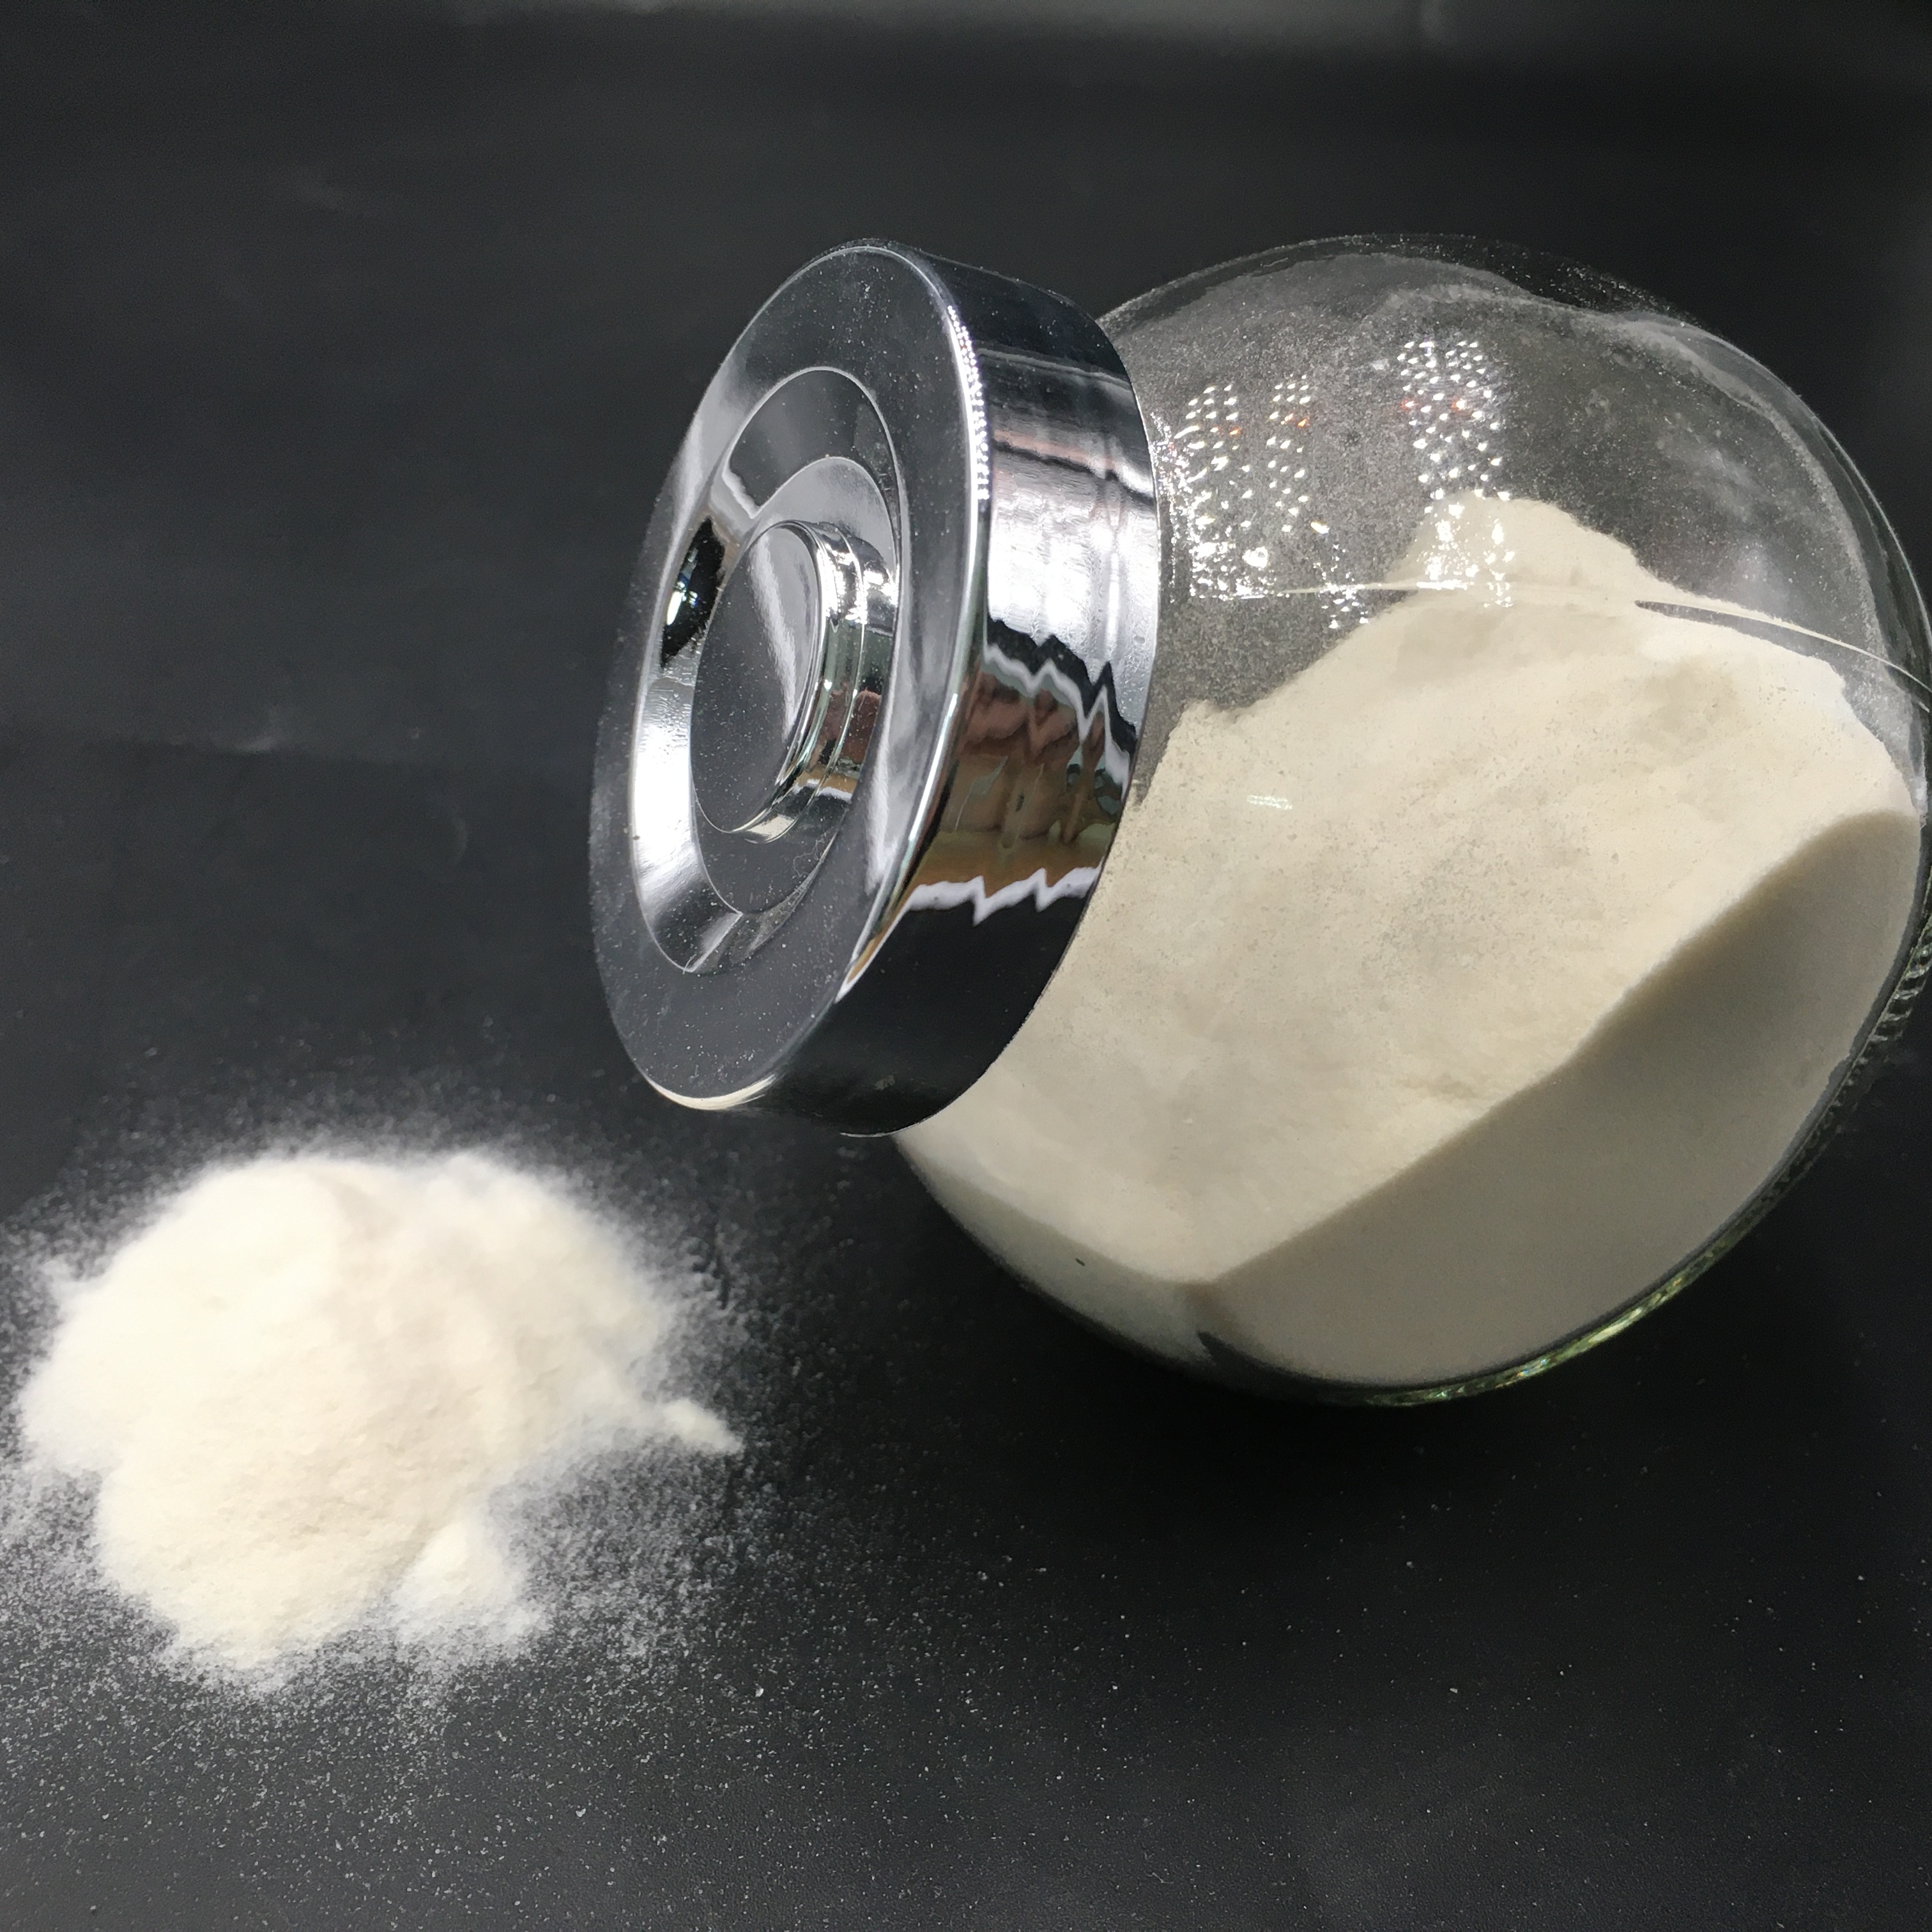 Molibdato de sodio de alta calidad a granel grado alimenticio anhidro grado industrial cristalino blanco con la mejor pureza cristalina para plantas para la venta